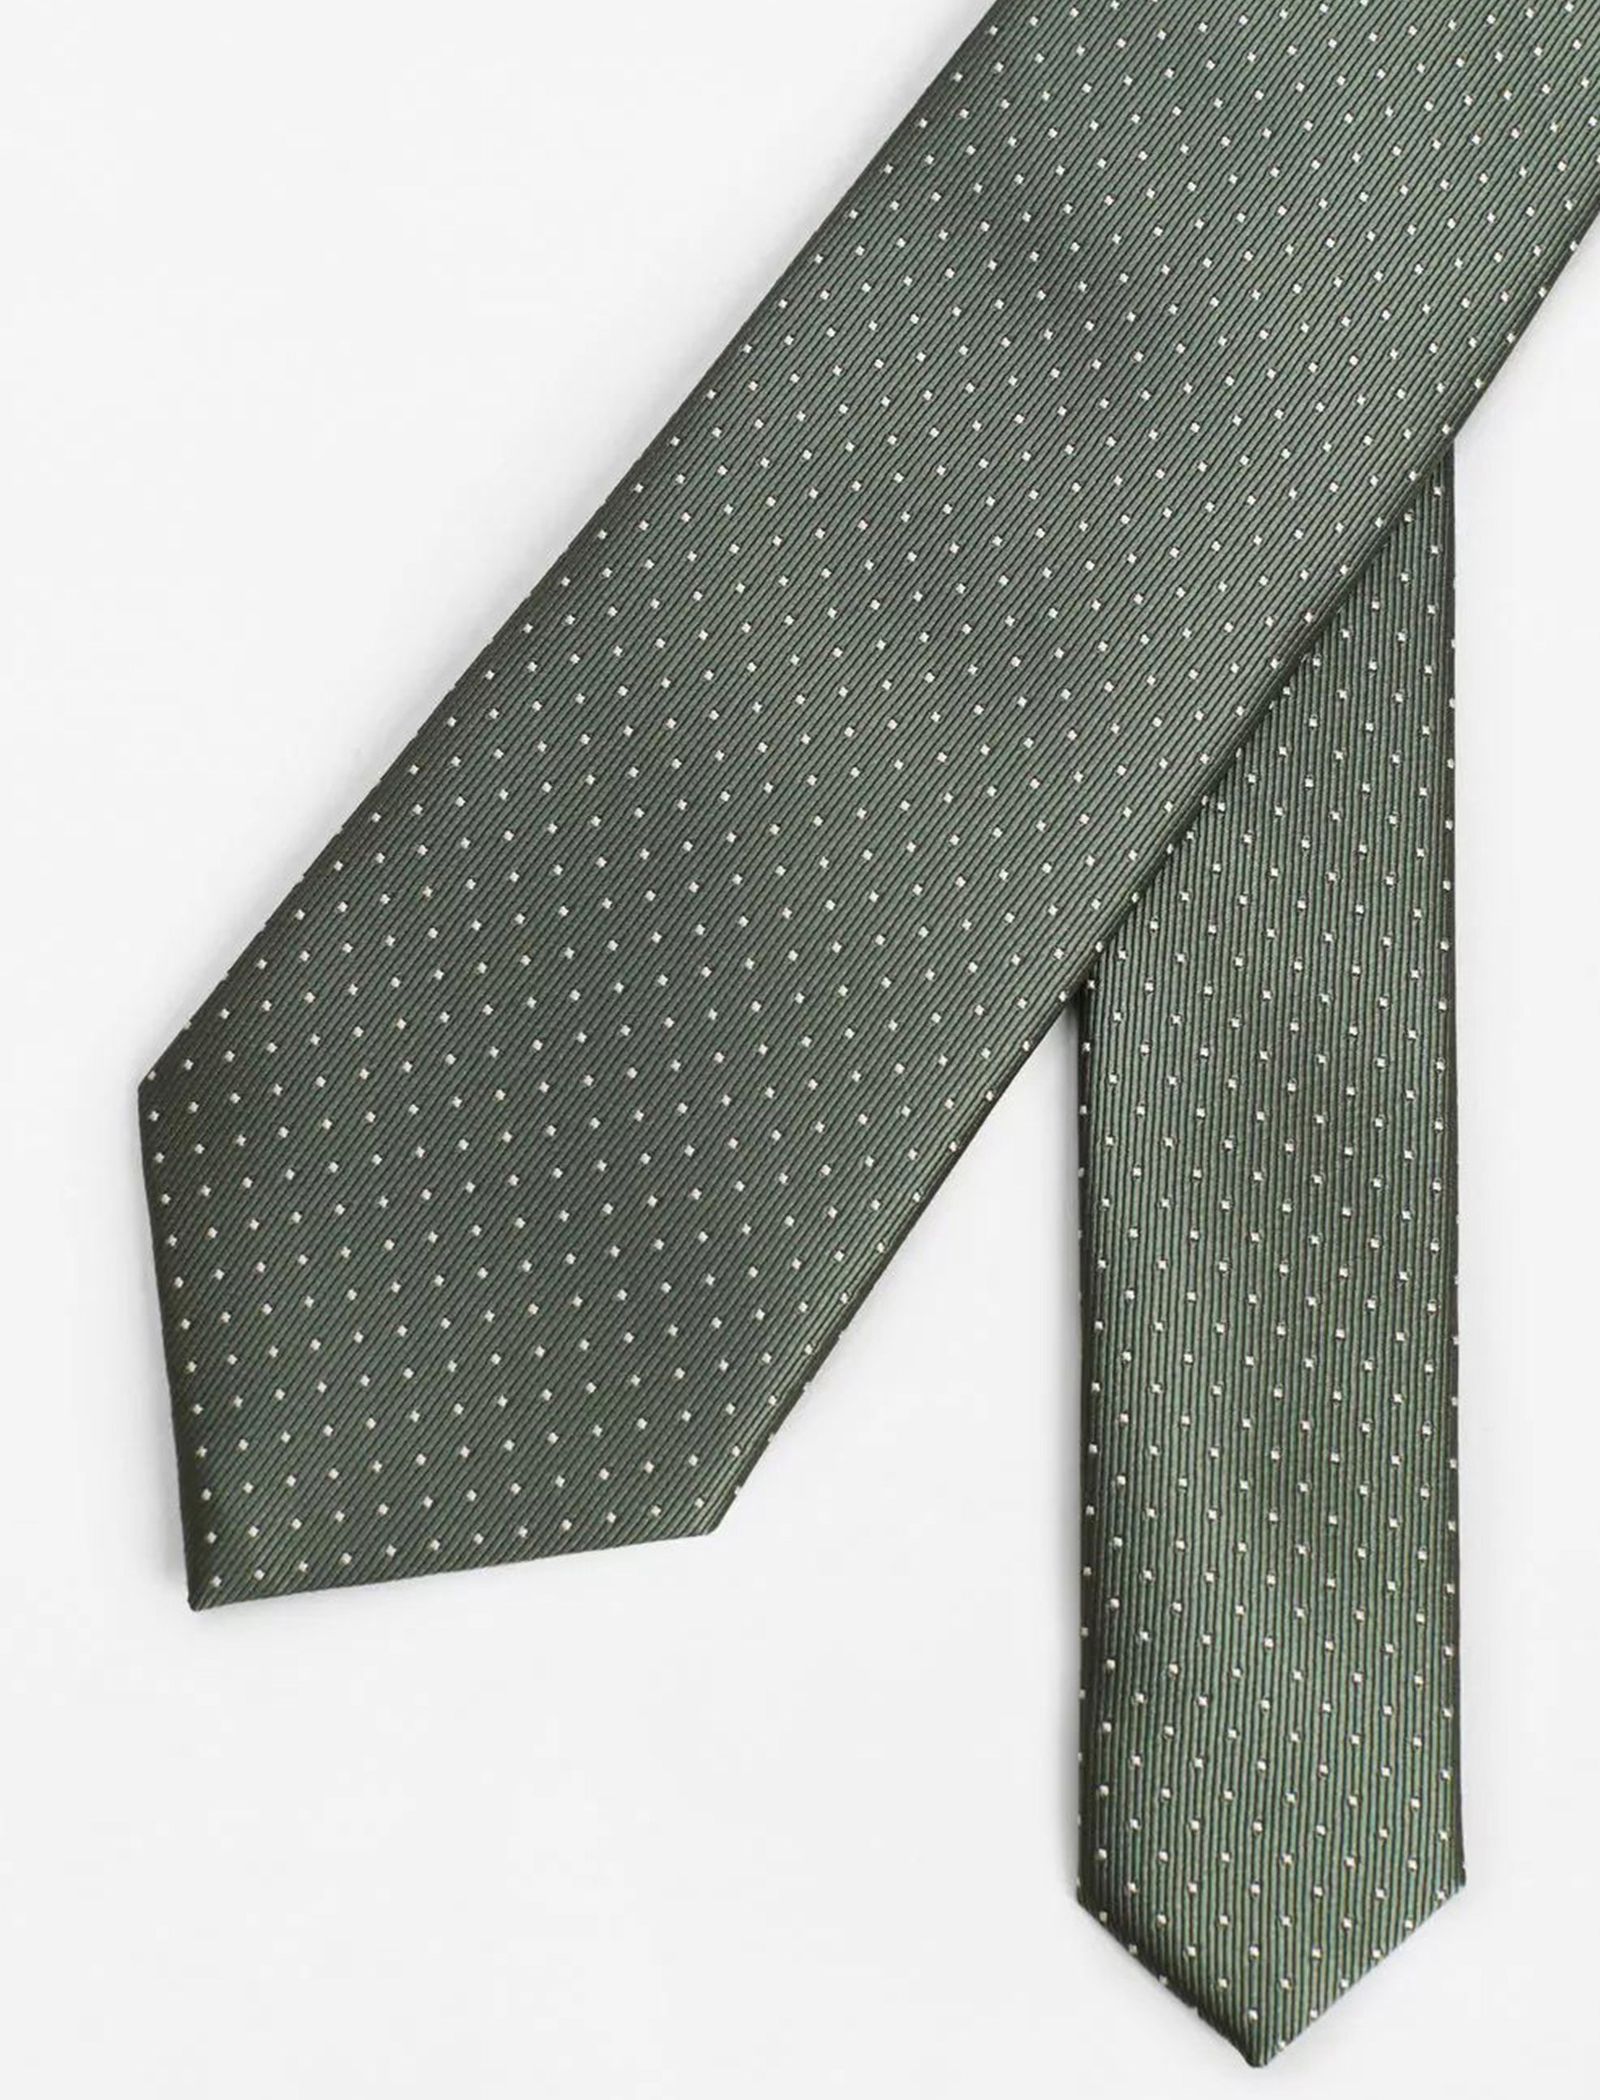 کراوات طرح دار مردانه - مانگو - سبز - 4